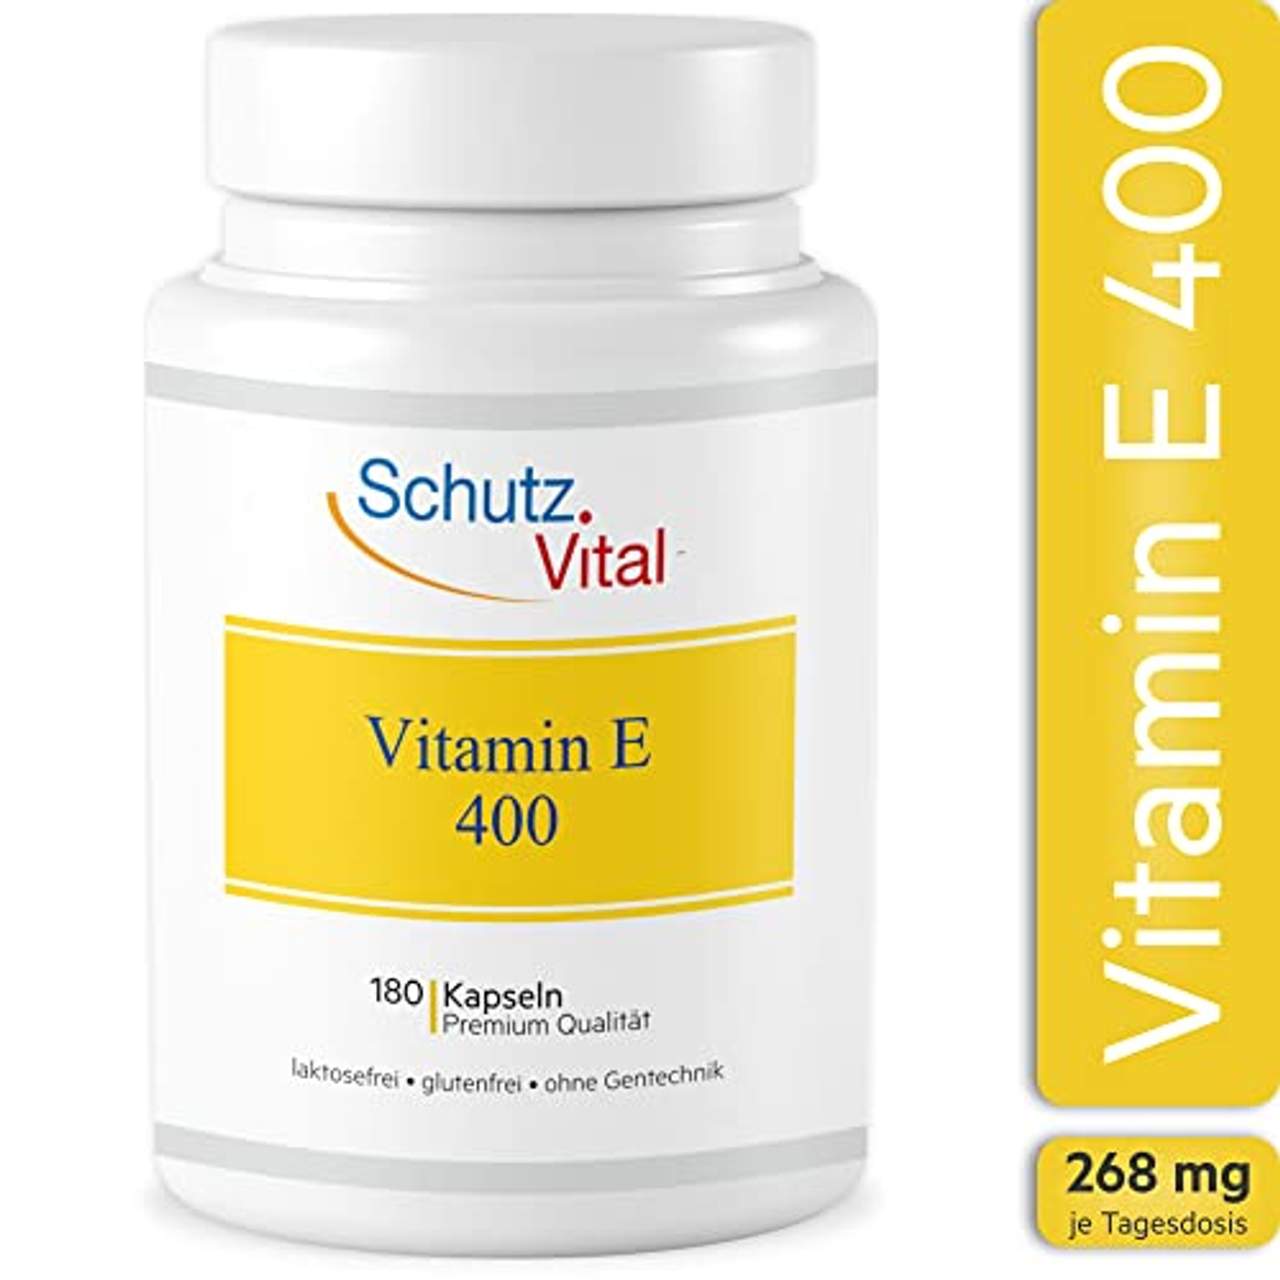 Schutz Vital Vitamin E hochdosiert